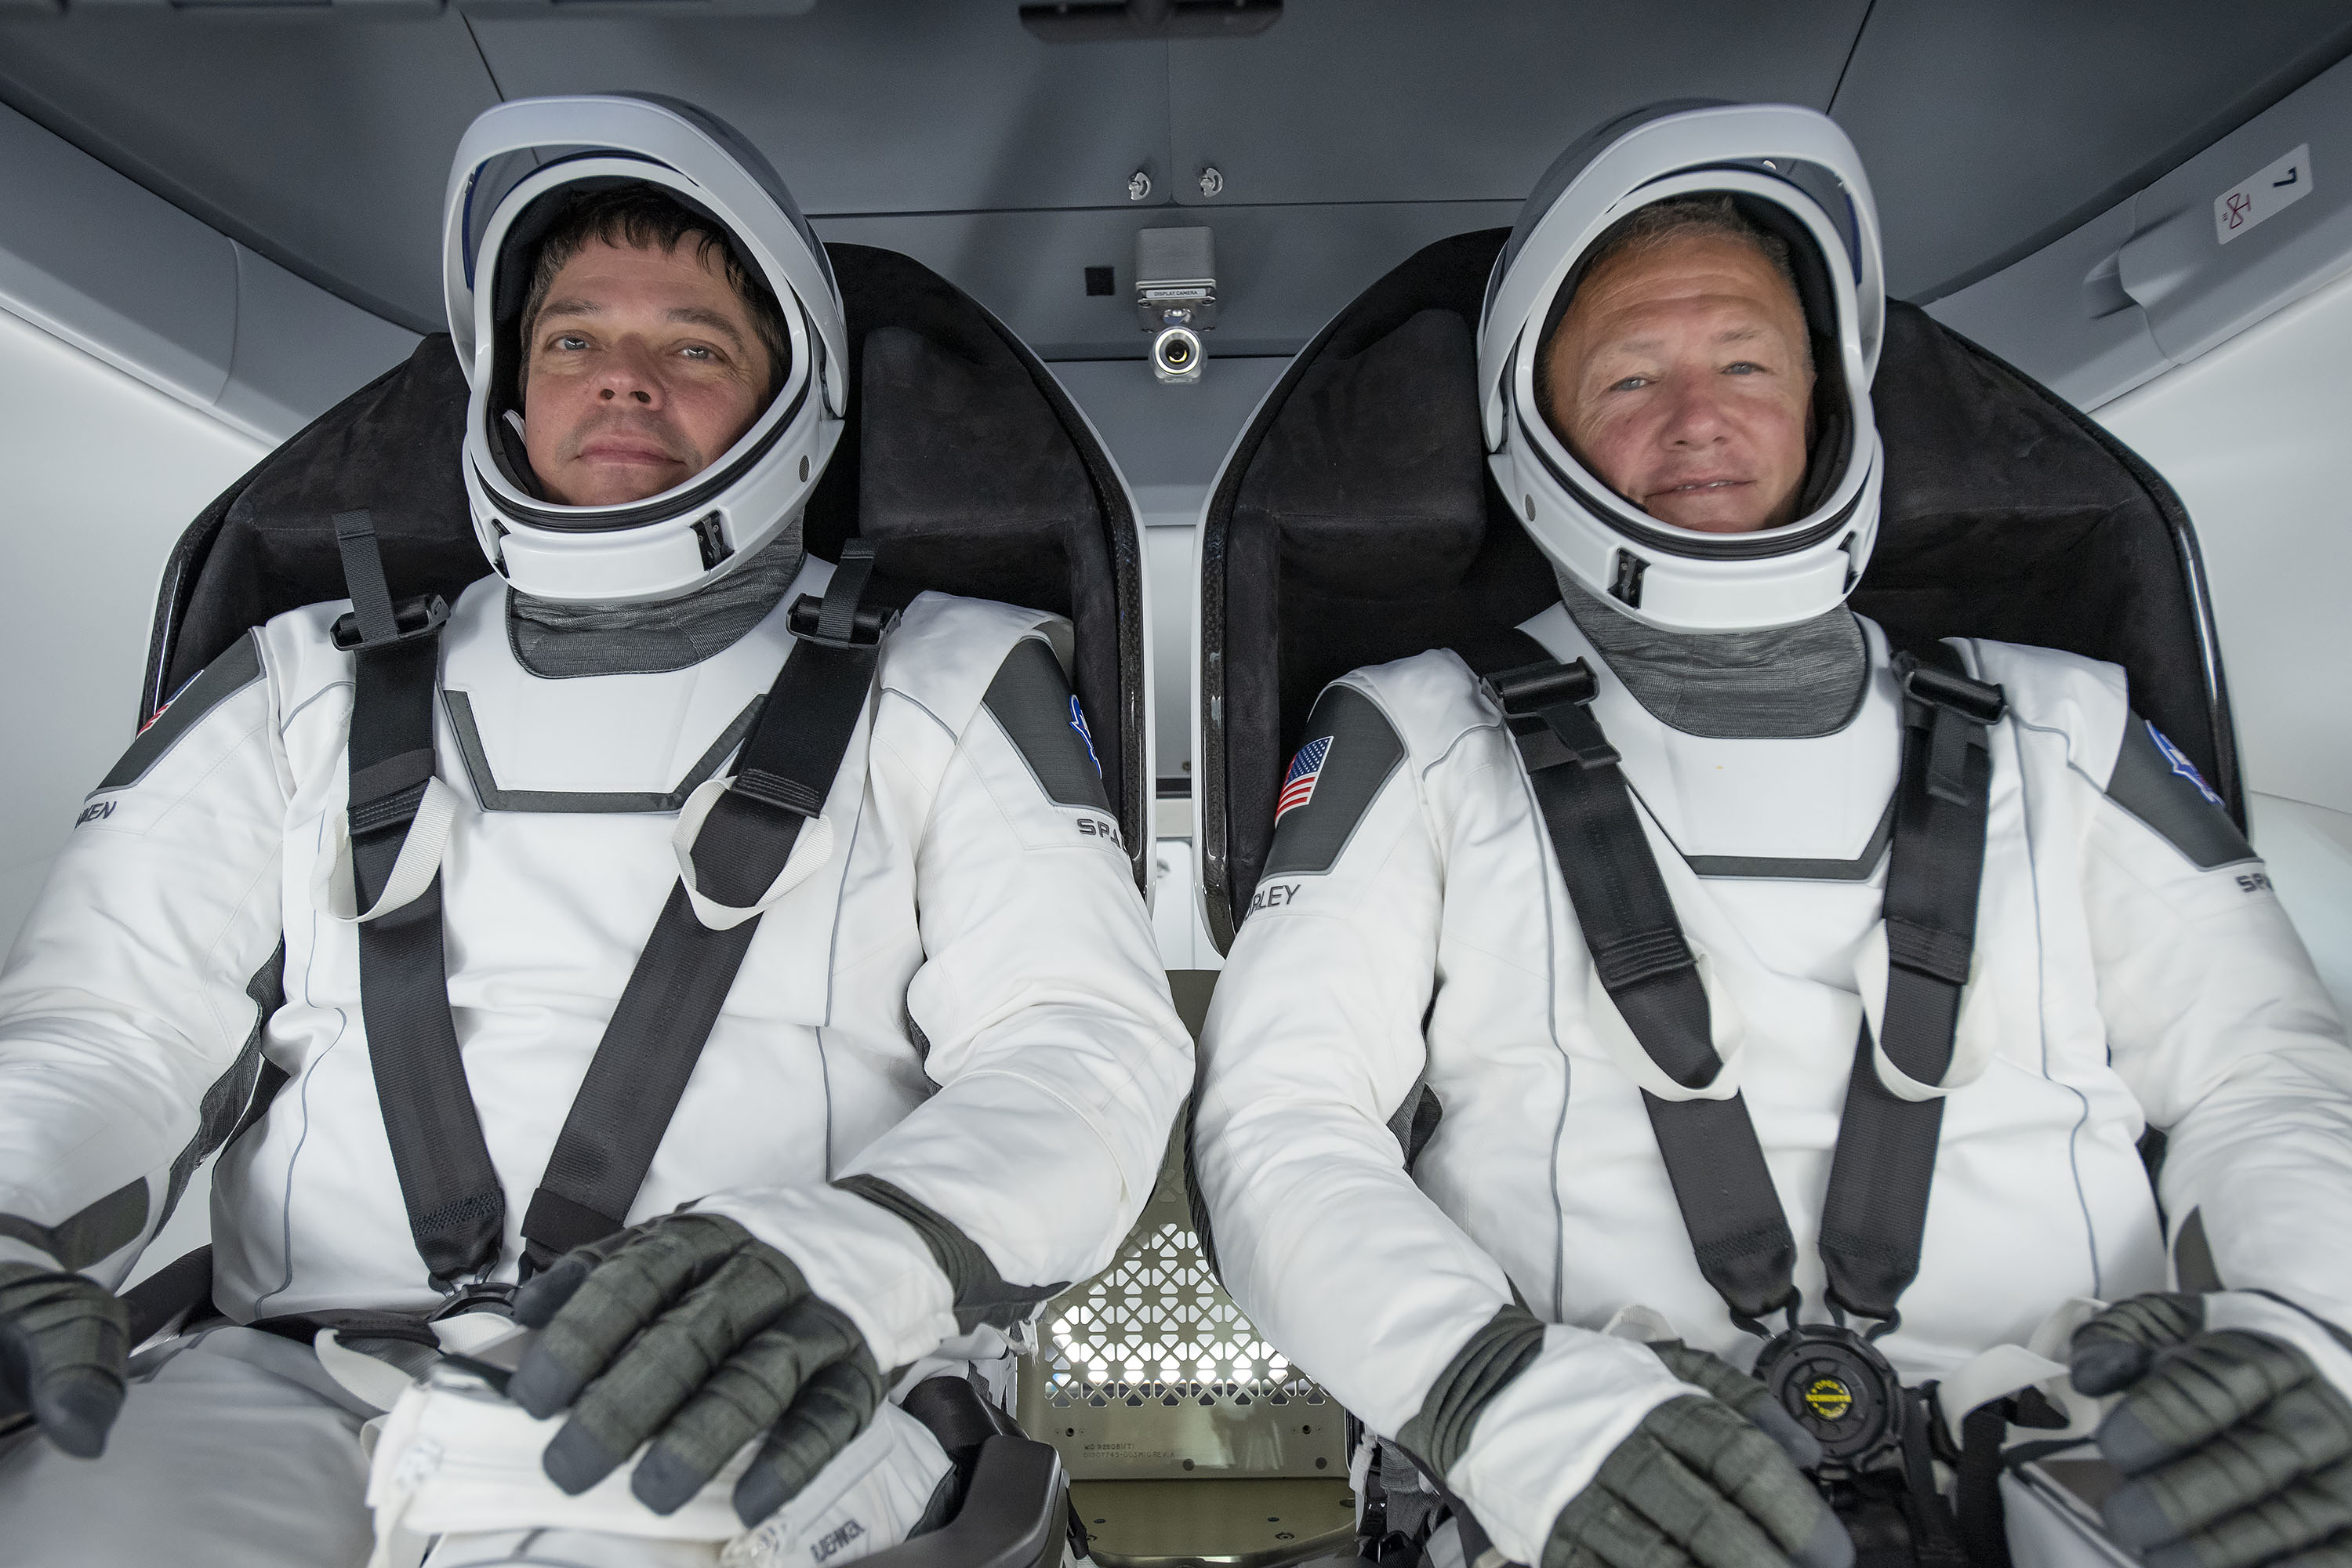 Astronauci Robert Behnken i Douglas Hurley w skafandrach kosmicznych (Źródło: SpaceX/NASA)